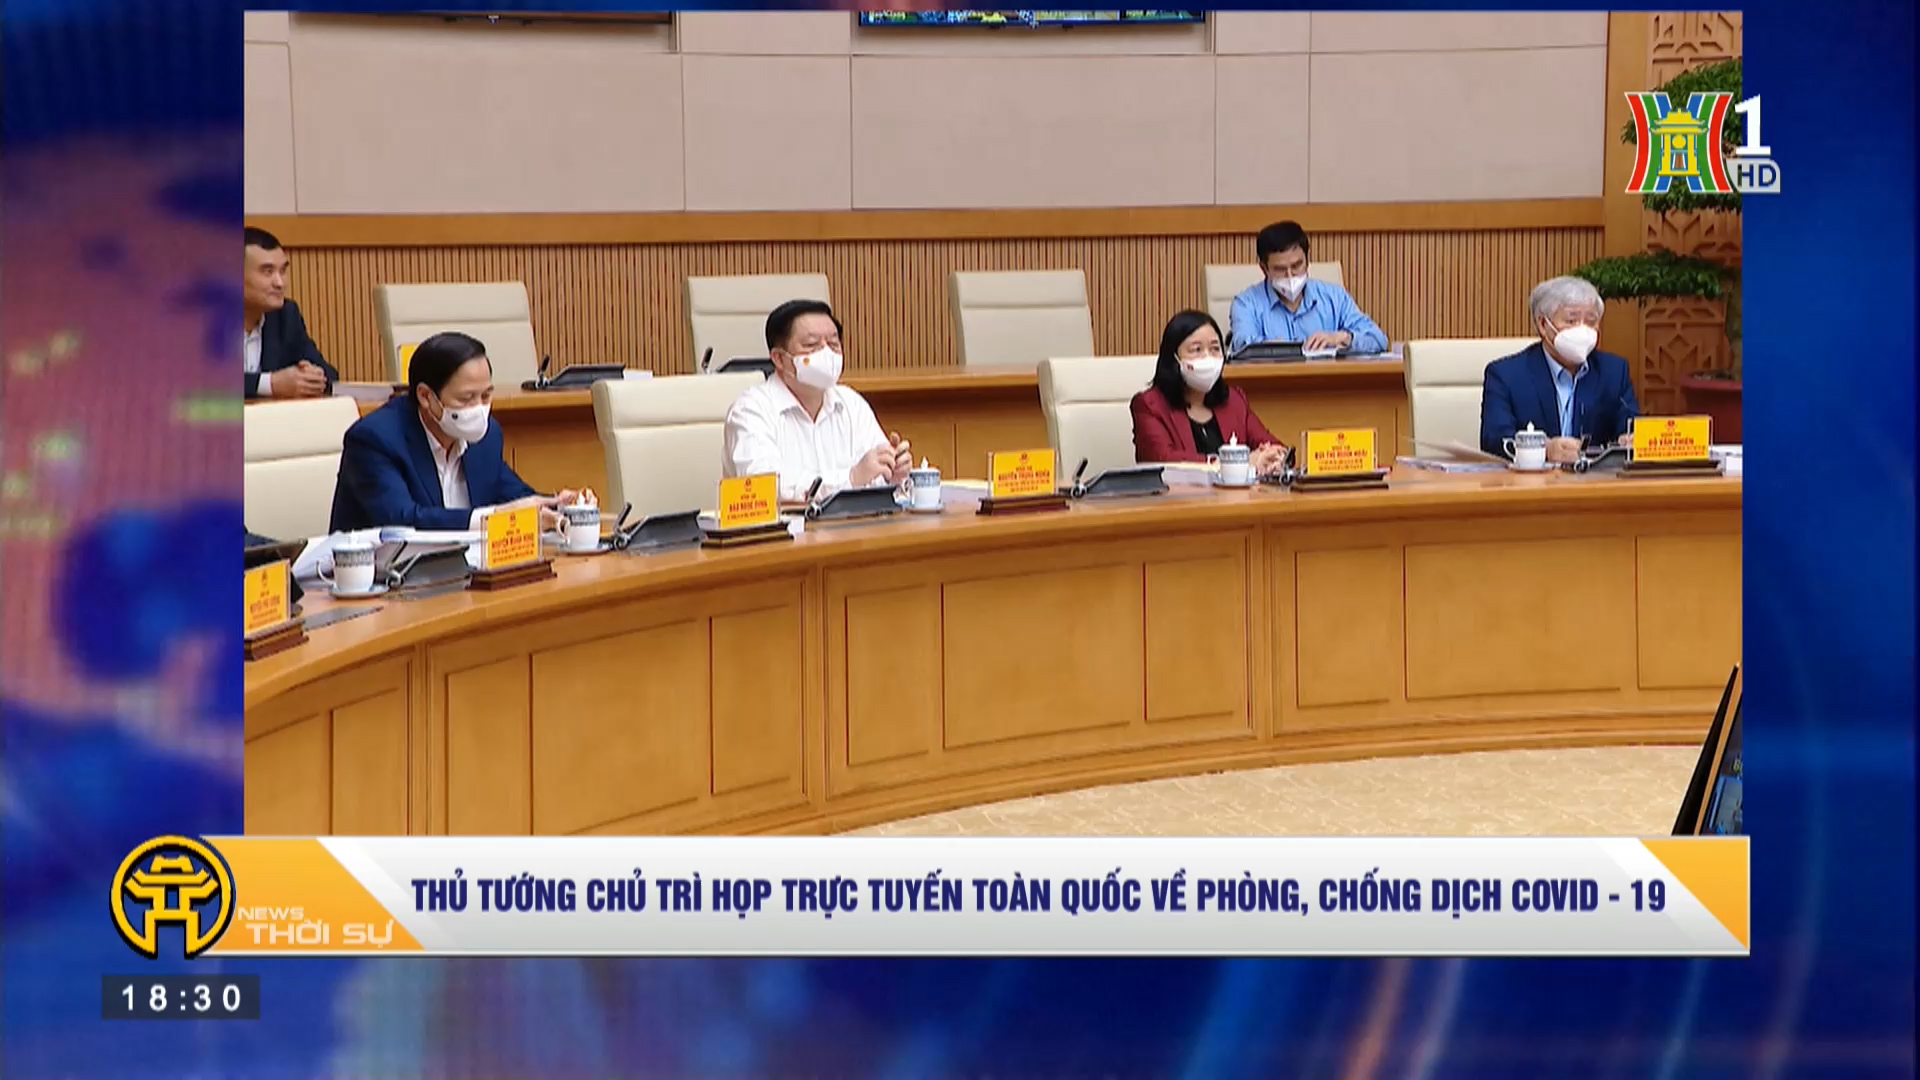 Thủ tướng chủ trì họp online phòng chống Covid